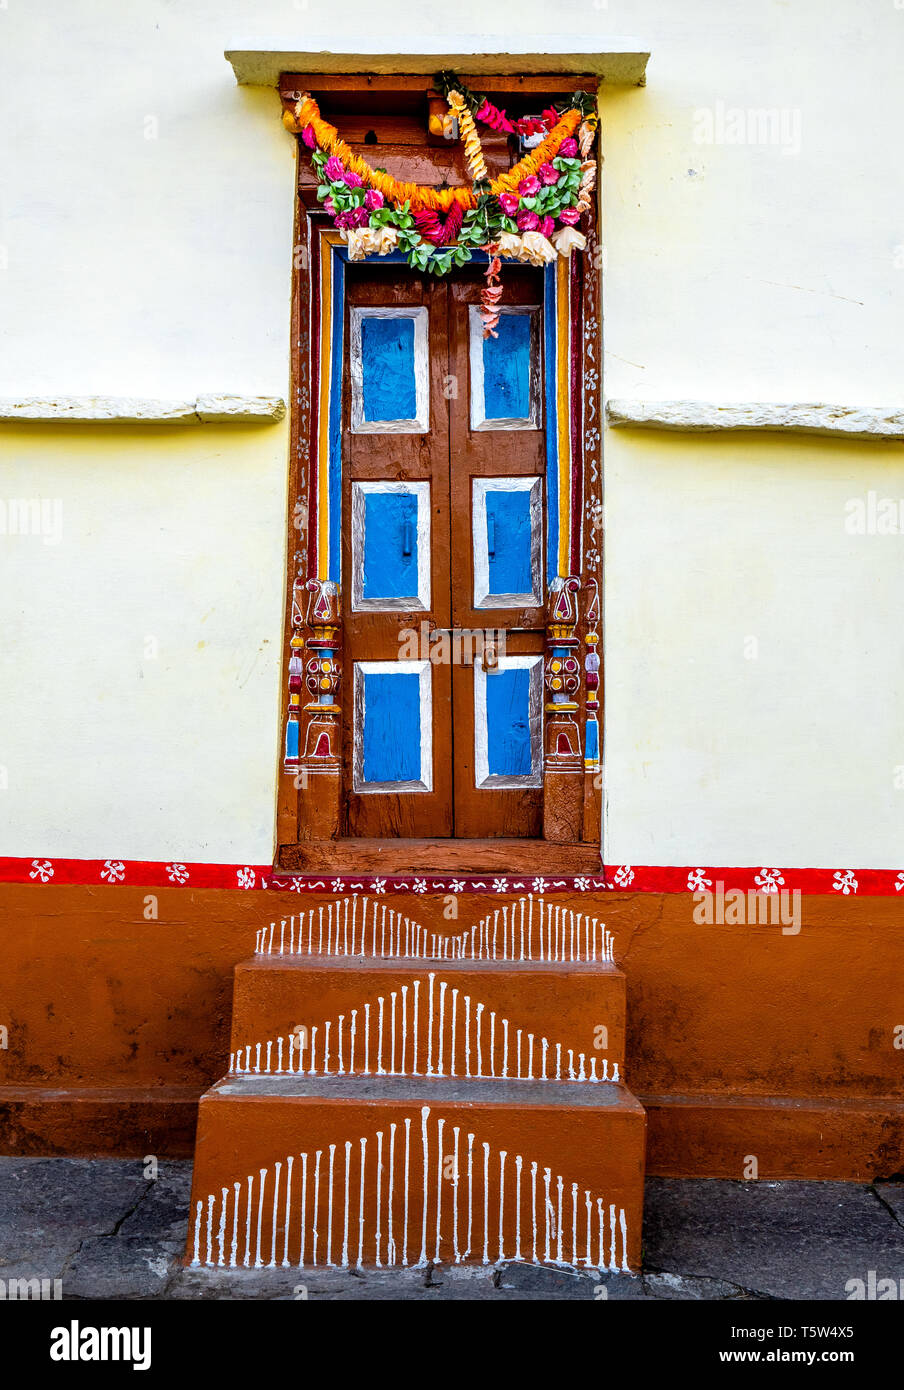 Dekoriert Türen in einem Haus in Supi Dorf hoch oben in den Saryu Tal der Uttarakhand Himalaya im Norden Indiens Stockfoto